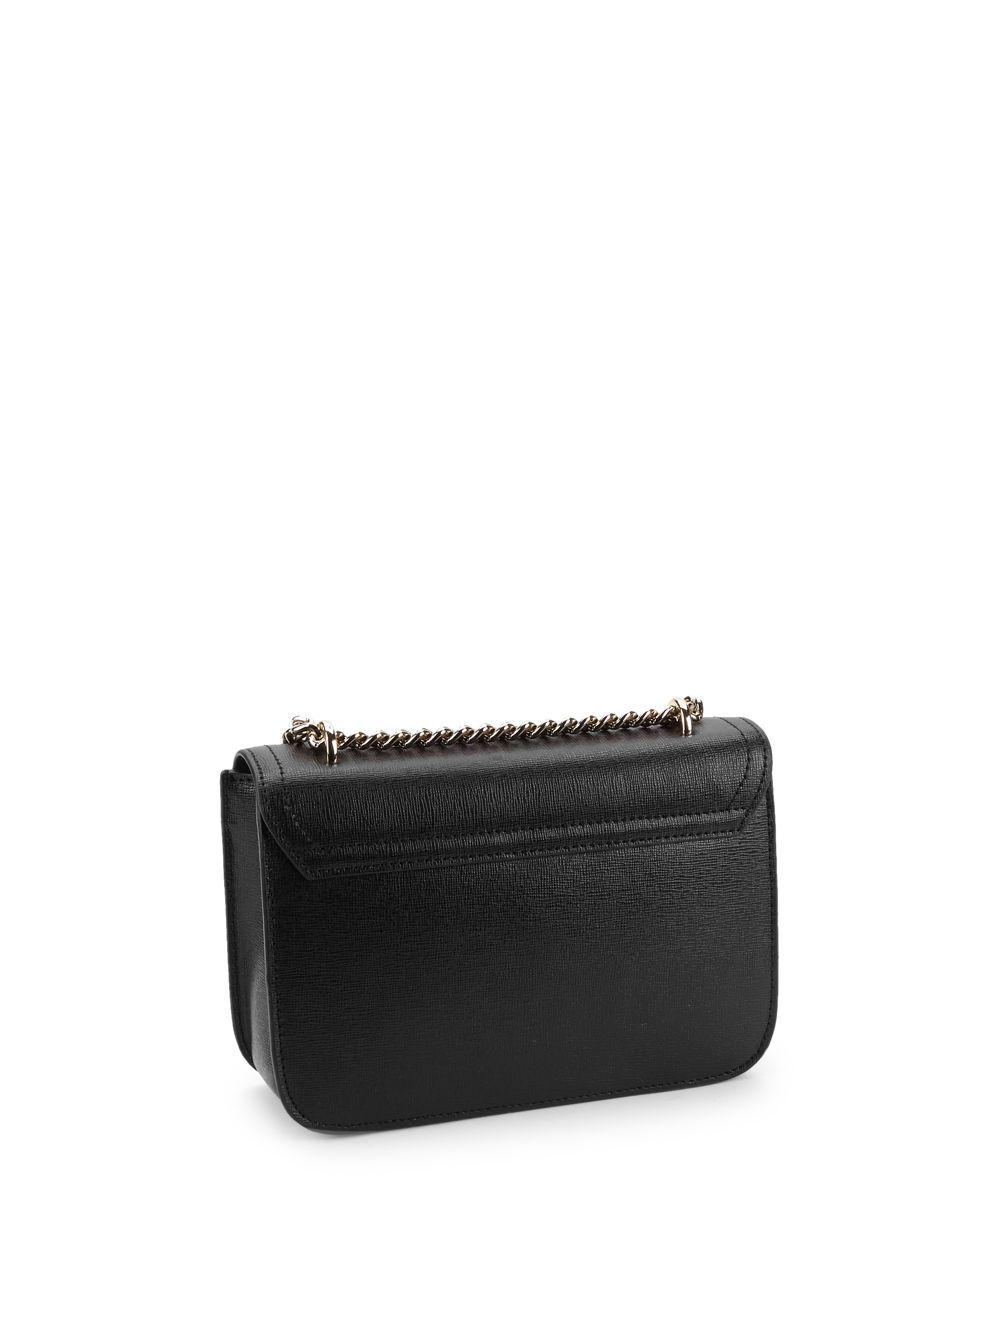 Furla Mini Carol Leather Crossbody Bag in Black | Lyst